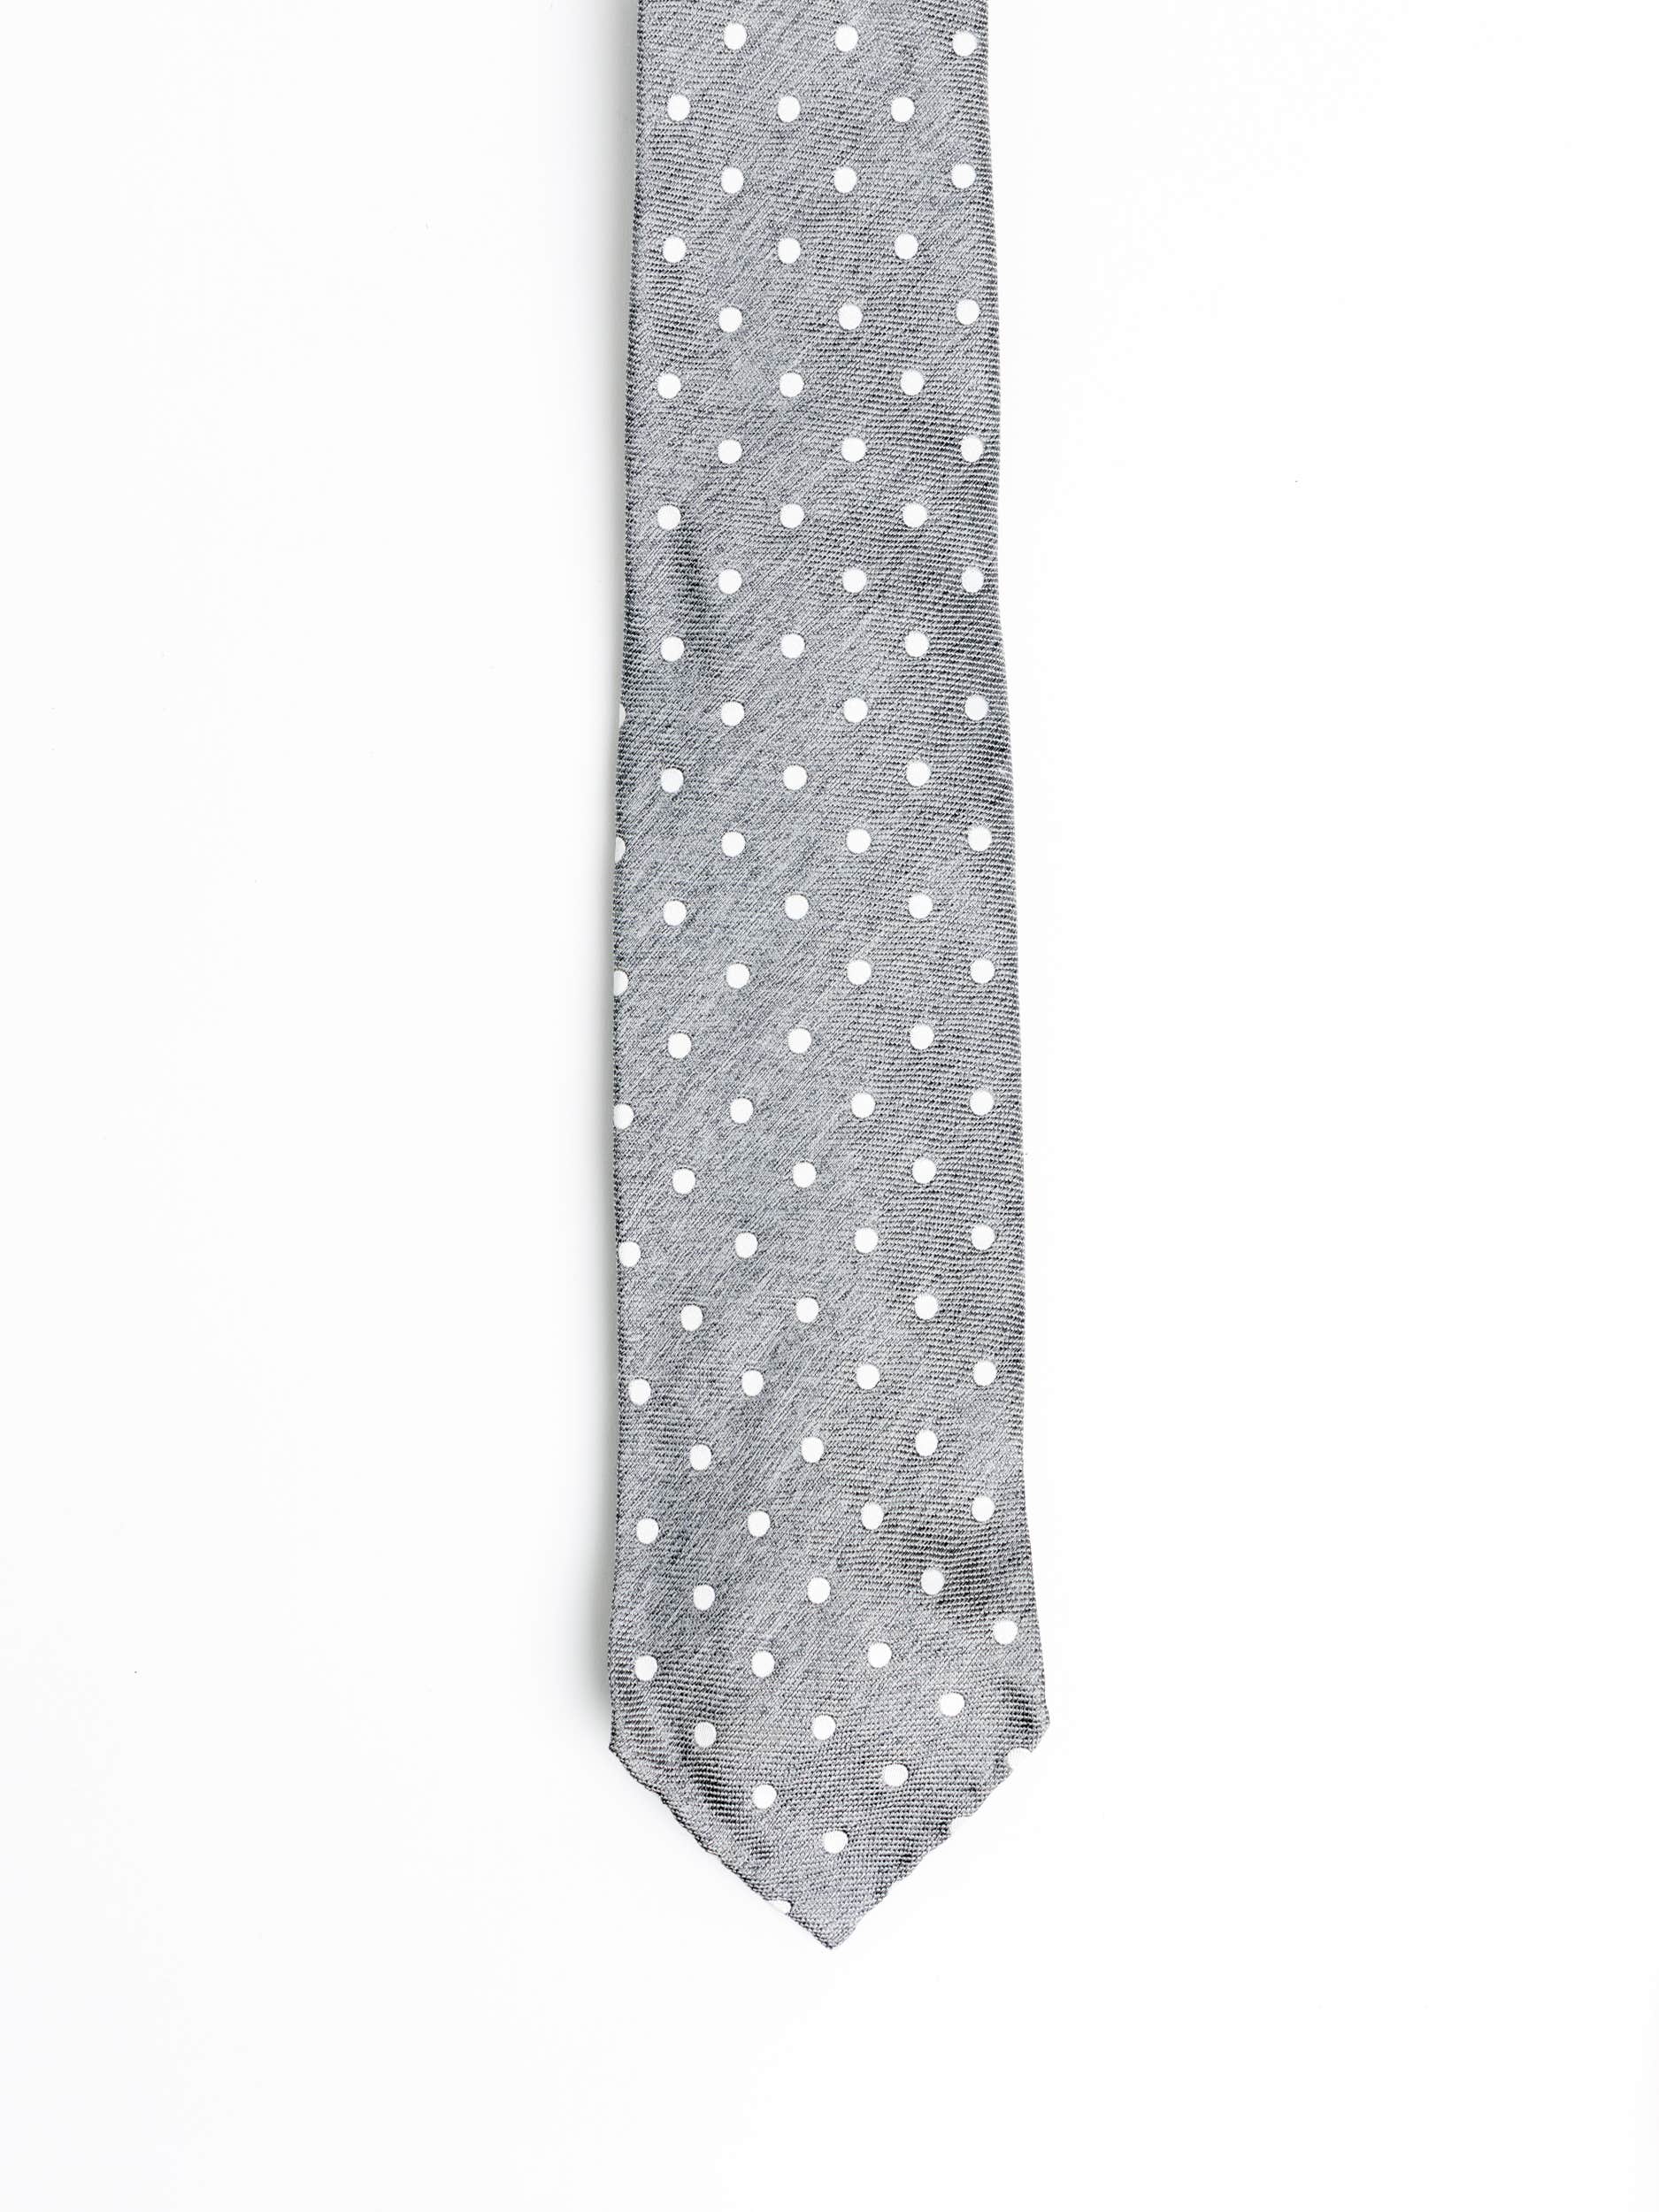 Grey Polka Dot Tie